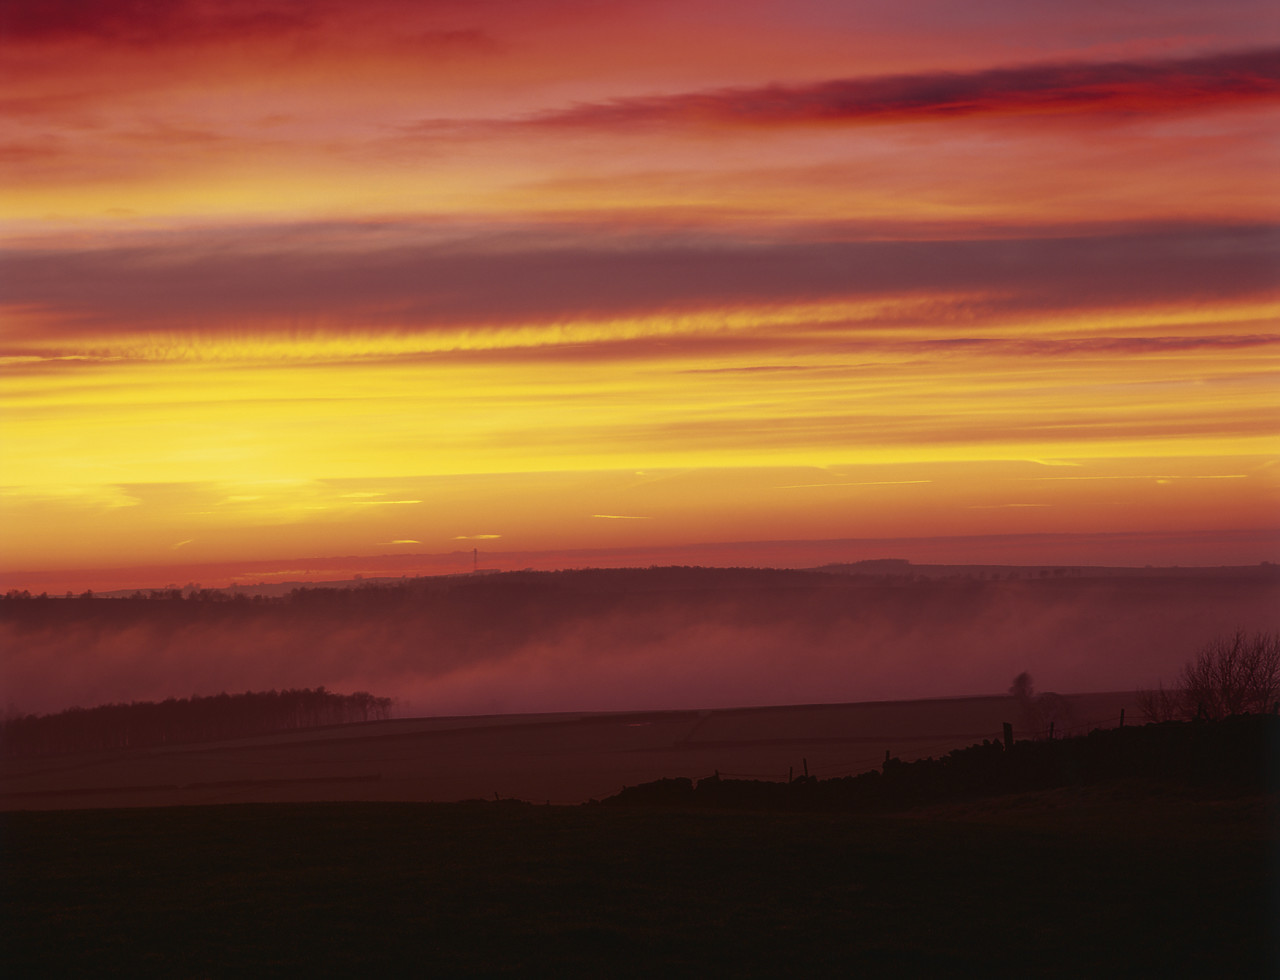 #050217-1 - Mist over Big Moor at Sunrise, Derbyshire, England